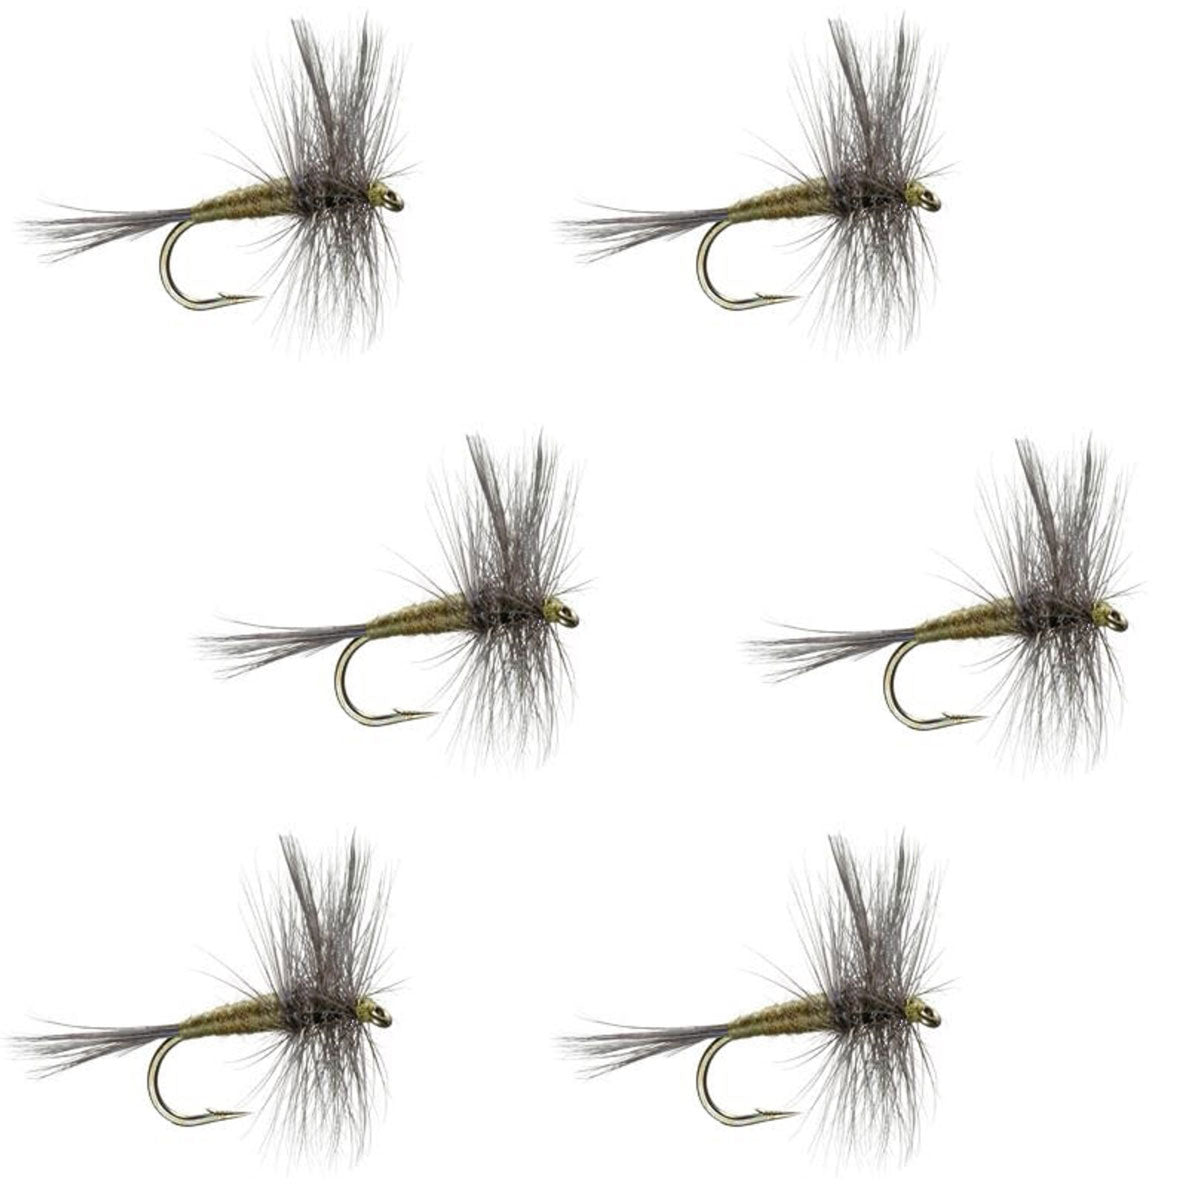 Moscas de pesca con mosca seca para trucha clásica BWO de oliva con alas azules, juego de 6 moscas, tamaño 18